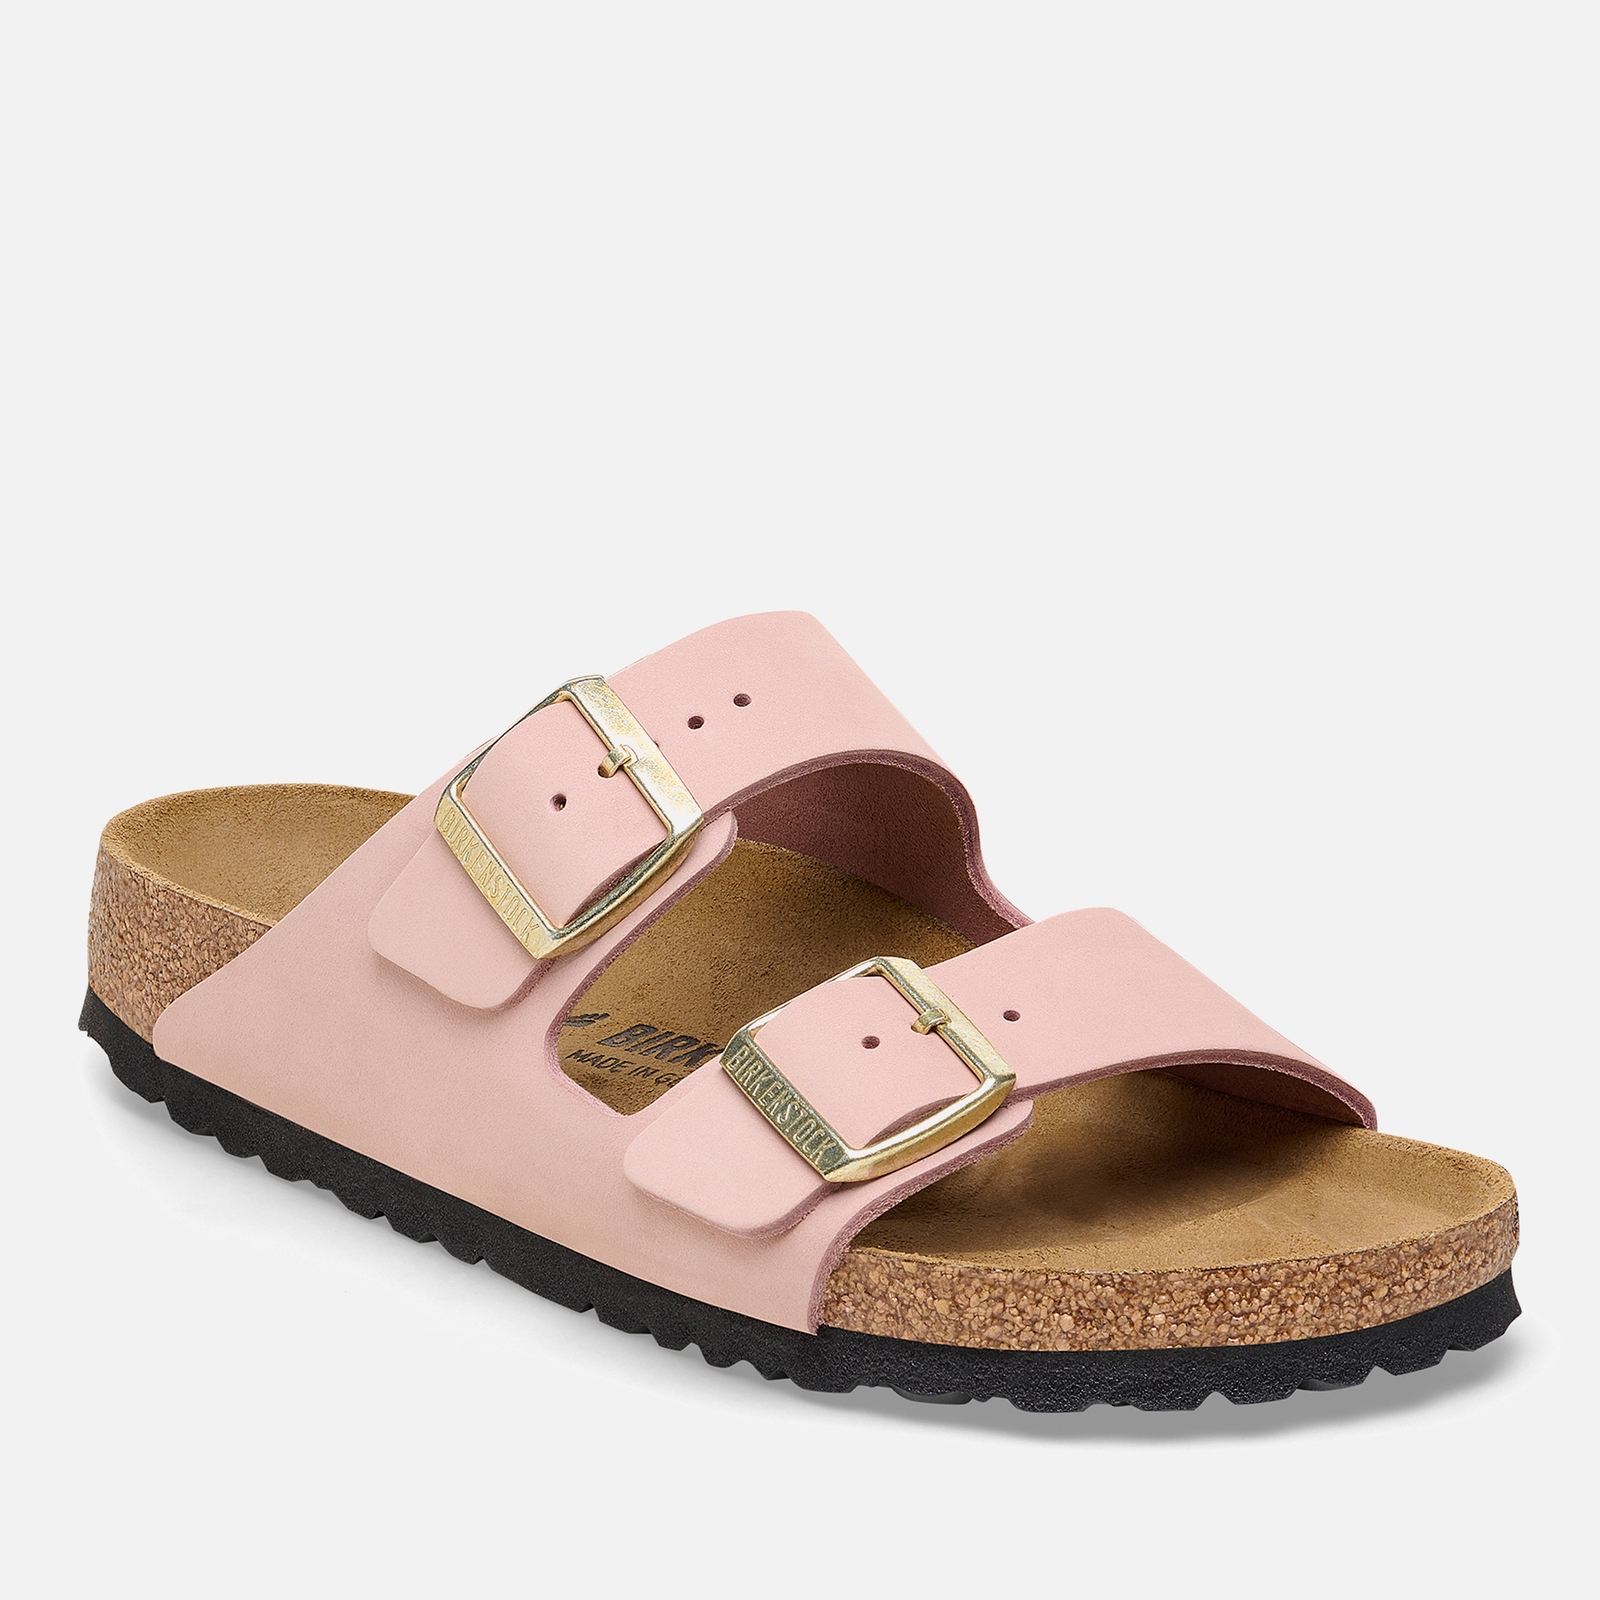 Birkenstock Women’s Arizona Slim-Fit Nubuck Double-Strap Sandals